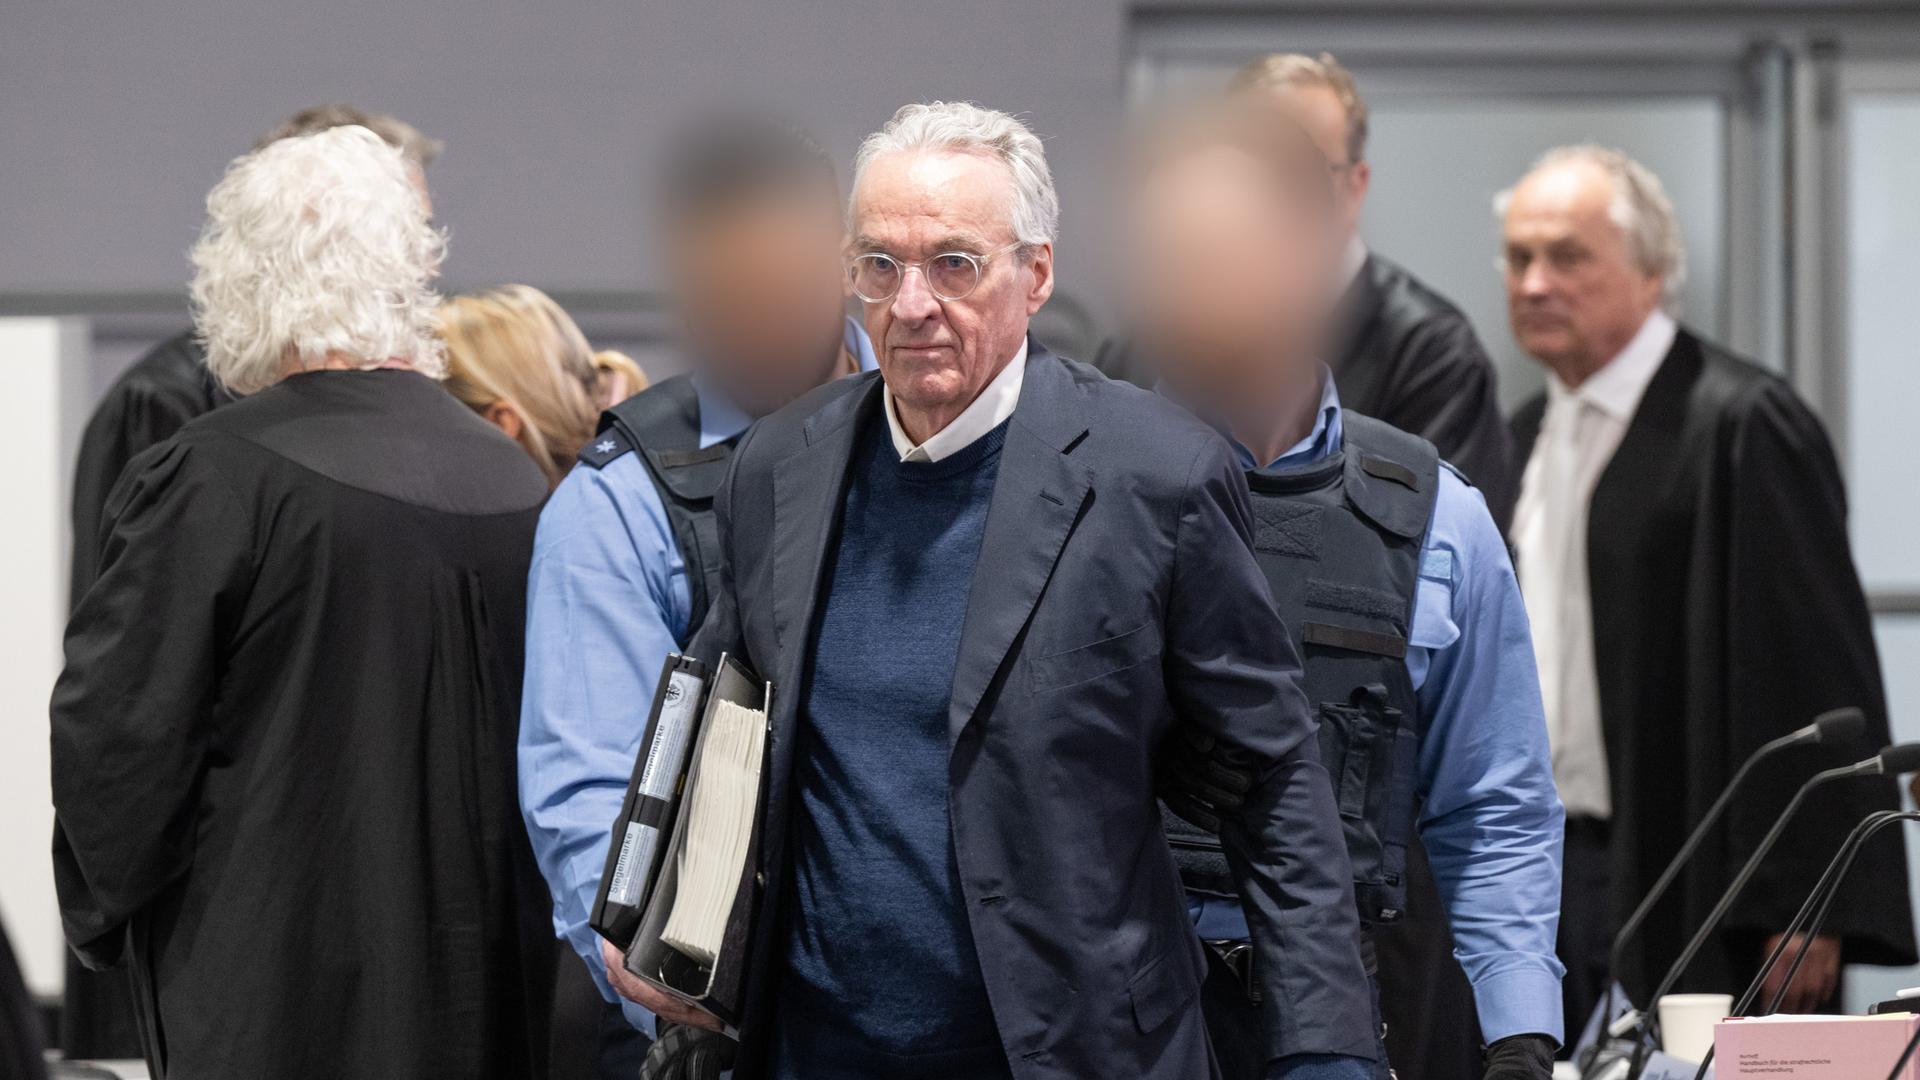 Heinrich Prinz Reuß wird von zwei Polizisten in den Gerichtssaal gebracht. Im Hintergrund stehen mehrere Anwälte in schwarzen Roben. 